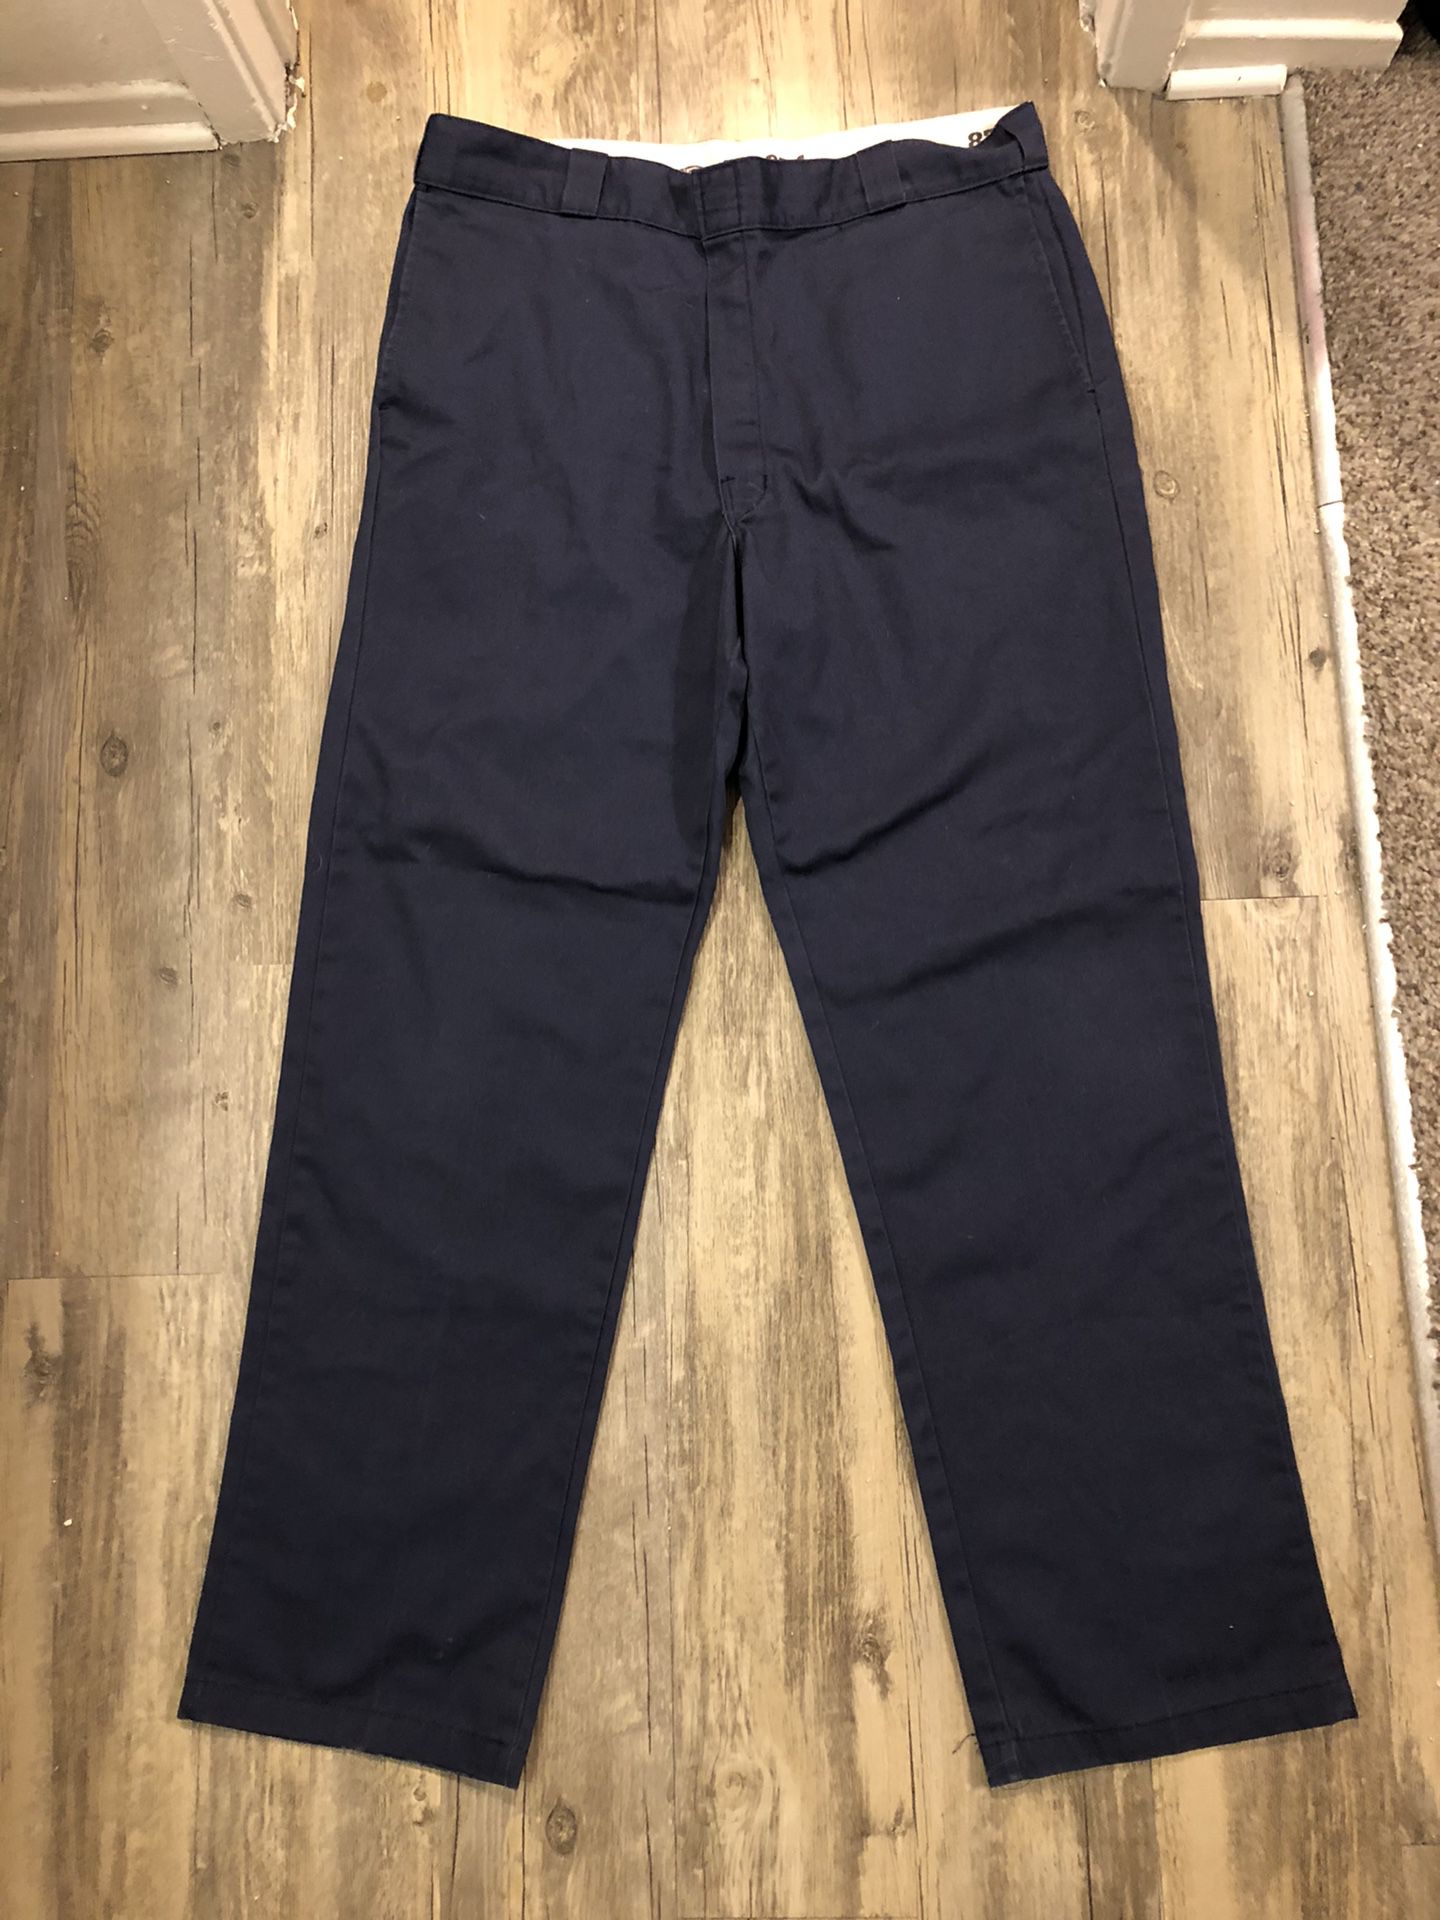 Navy Blue Dickies 874 Pants